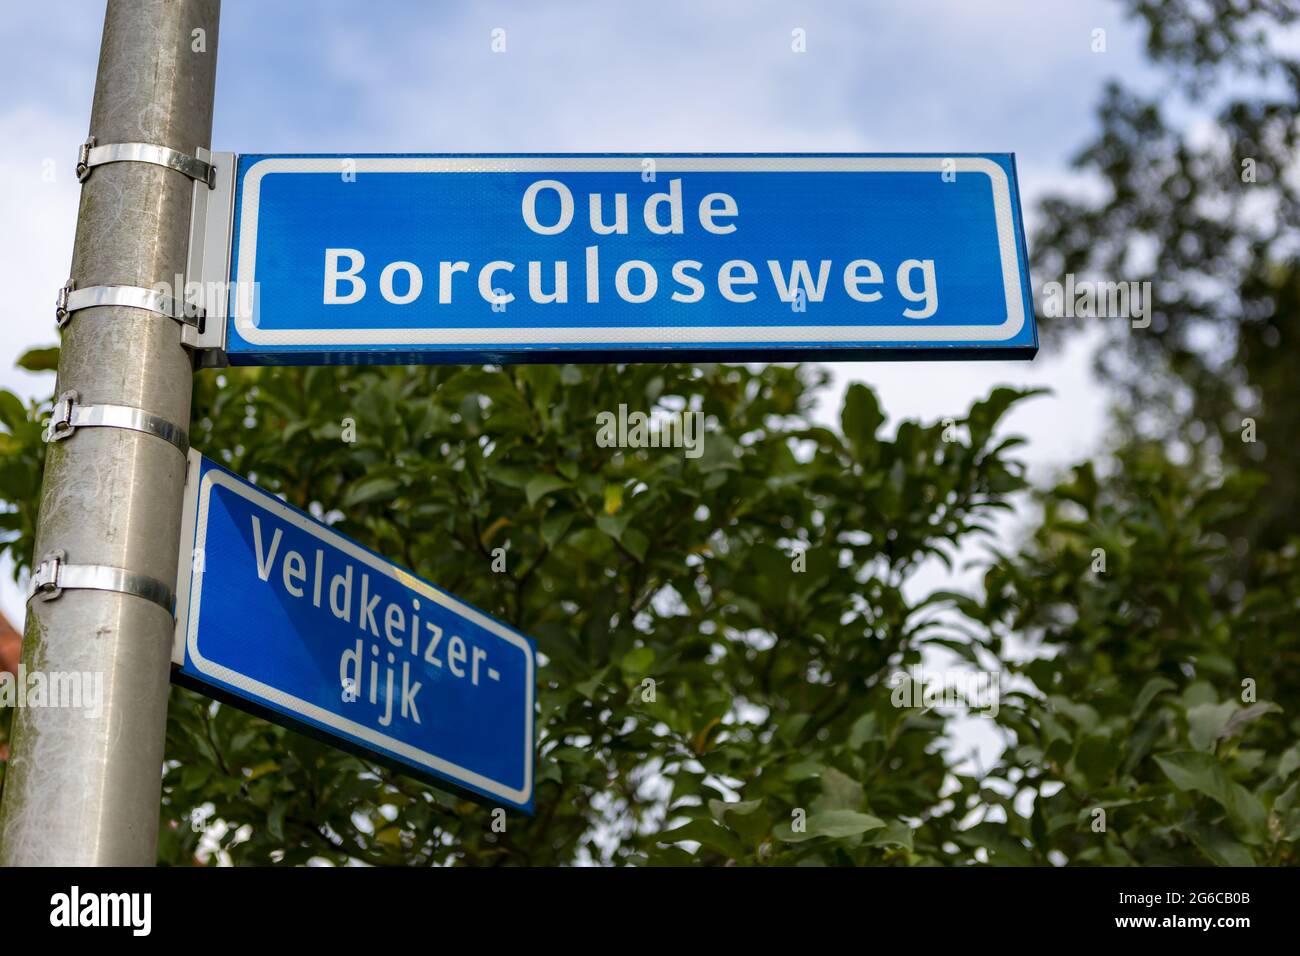 WIERDEN, PAYS-BAS - 10 septembre 2020 : panneau routier hollandais en bleu  avec lettre blanche contre un ciel bleu avec des nuages et de la verdure en  arrière-plan Photo Stock - Alamy